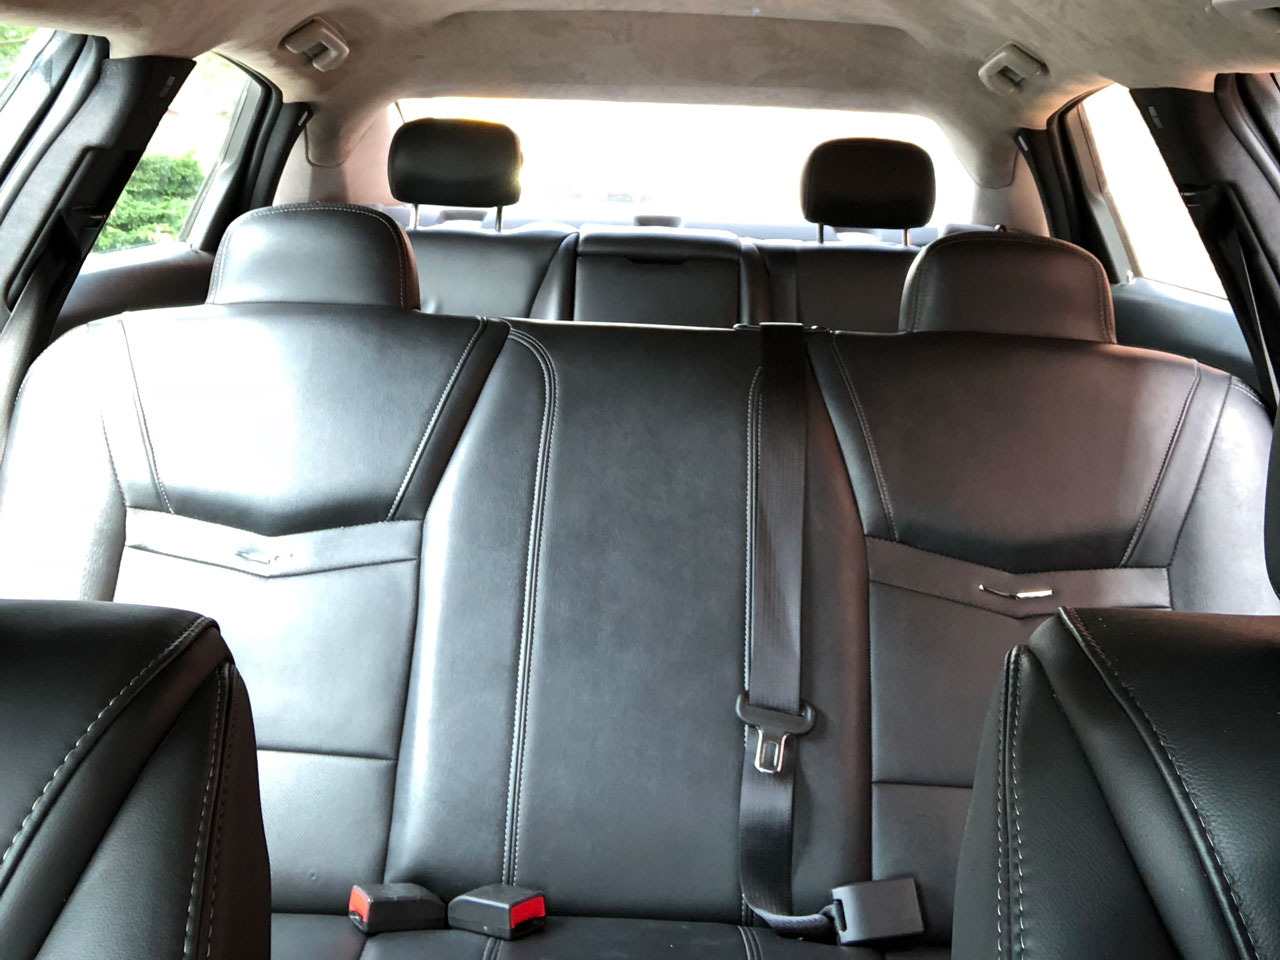 2019 Eagle Coach Company Cadillac Regency 6 Door Limousine 4